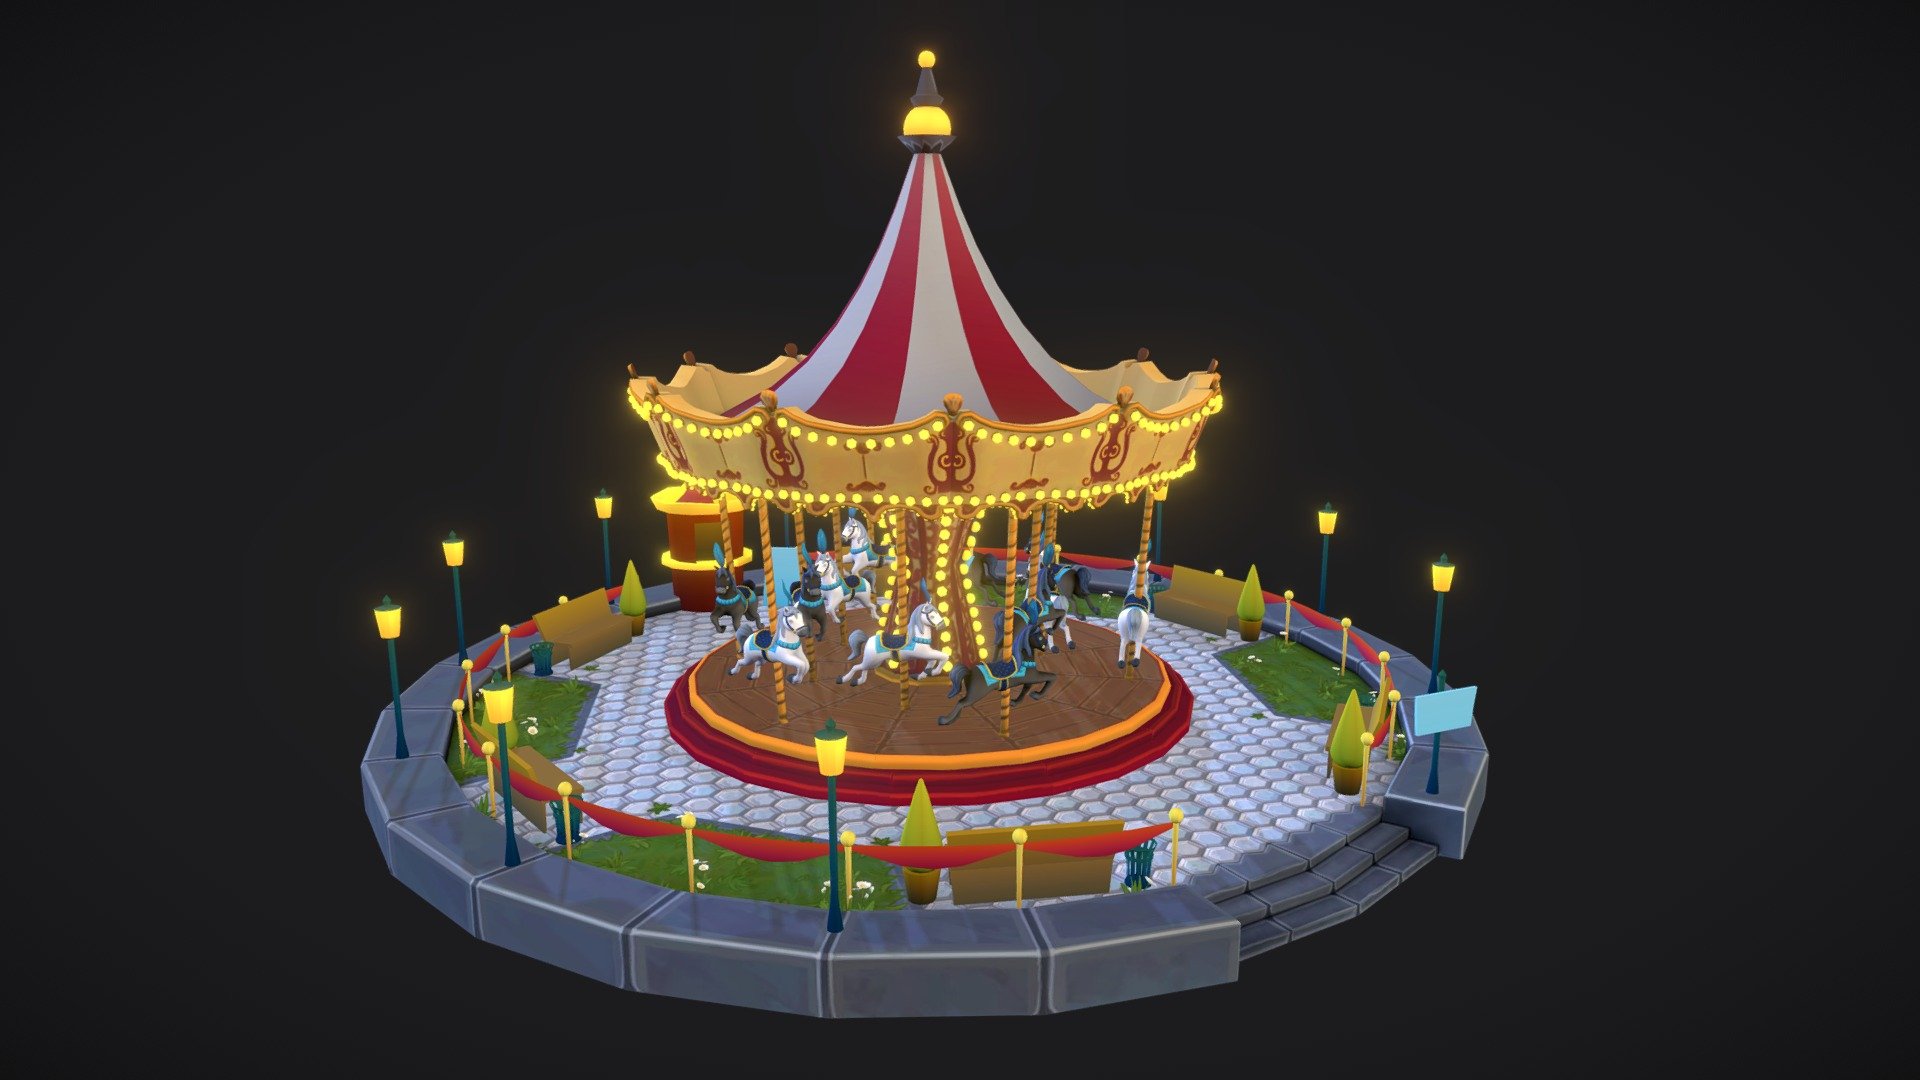 Work in progress

Still a lot to do :) - WIP CGMA Merry-go-round carousel - 3D model by Enkarra 3d model